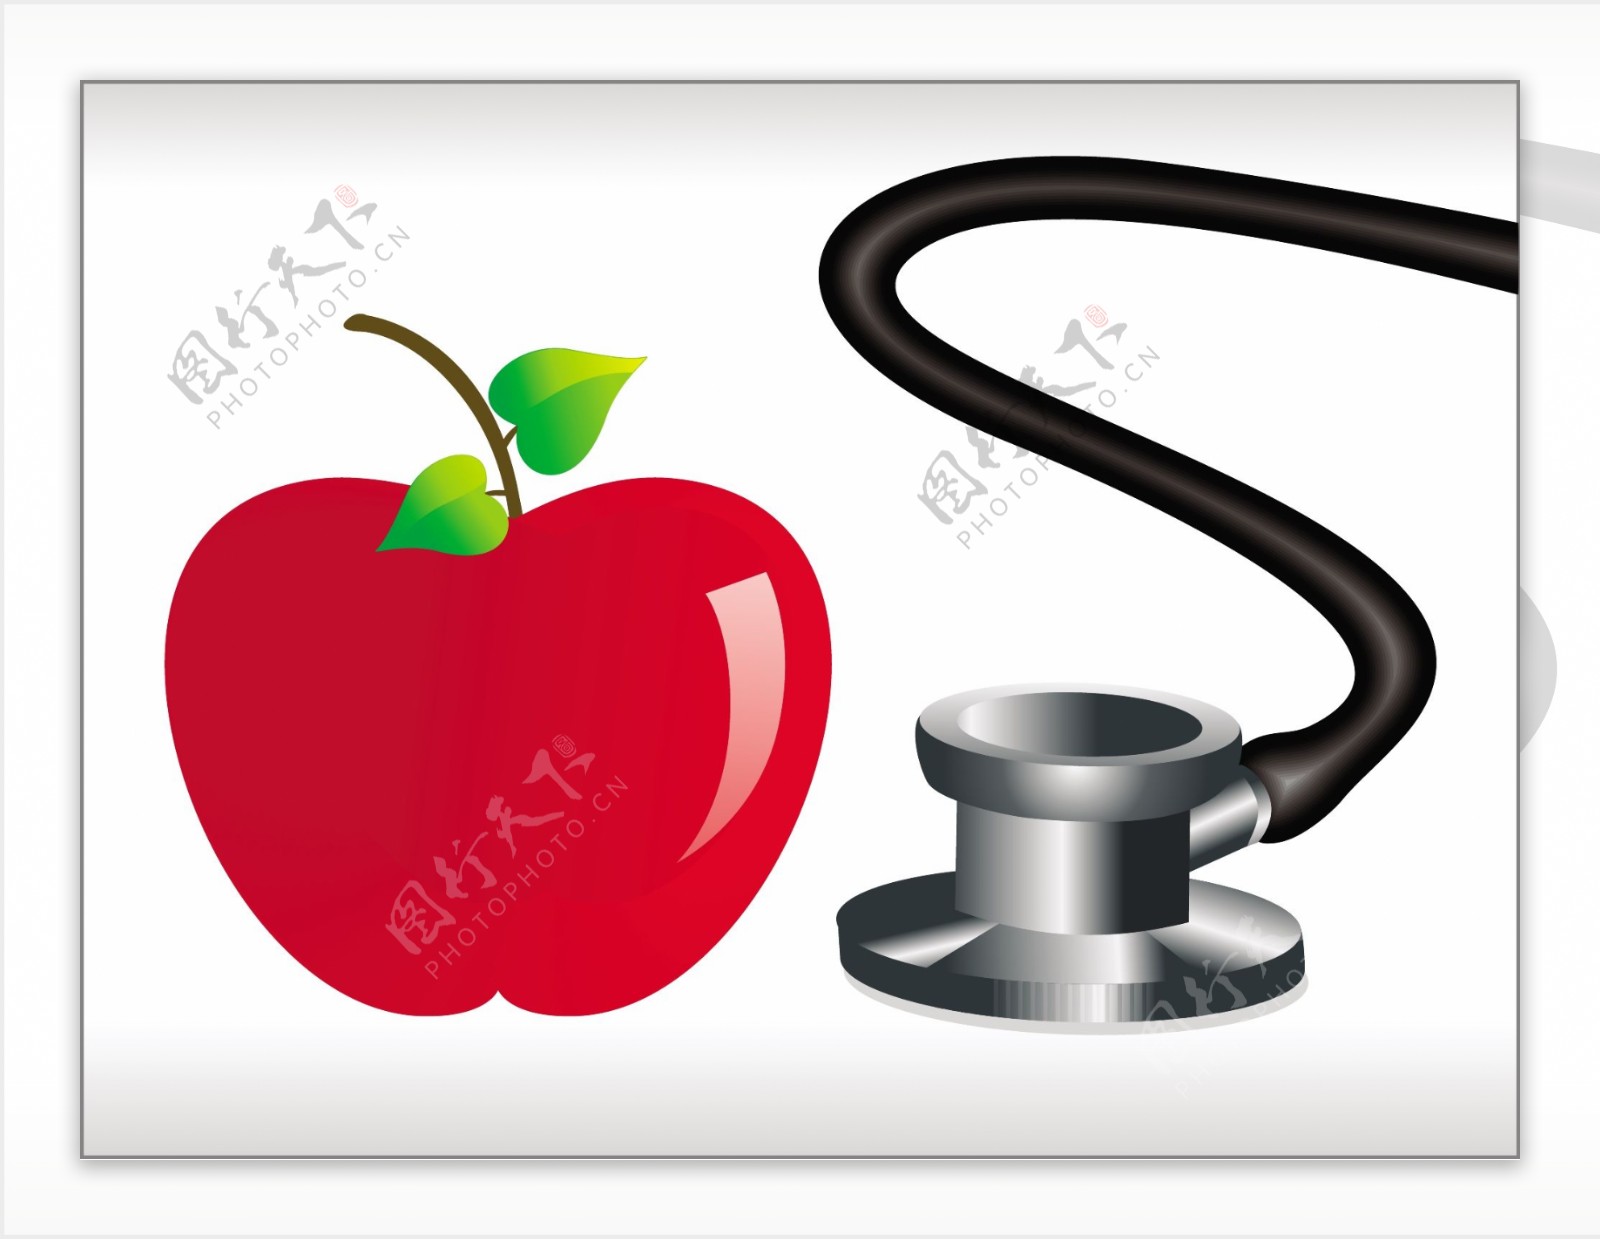 听诊器和红苹果